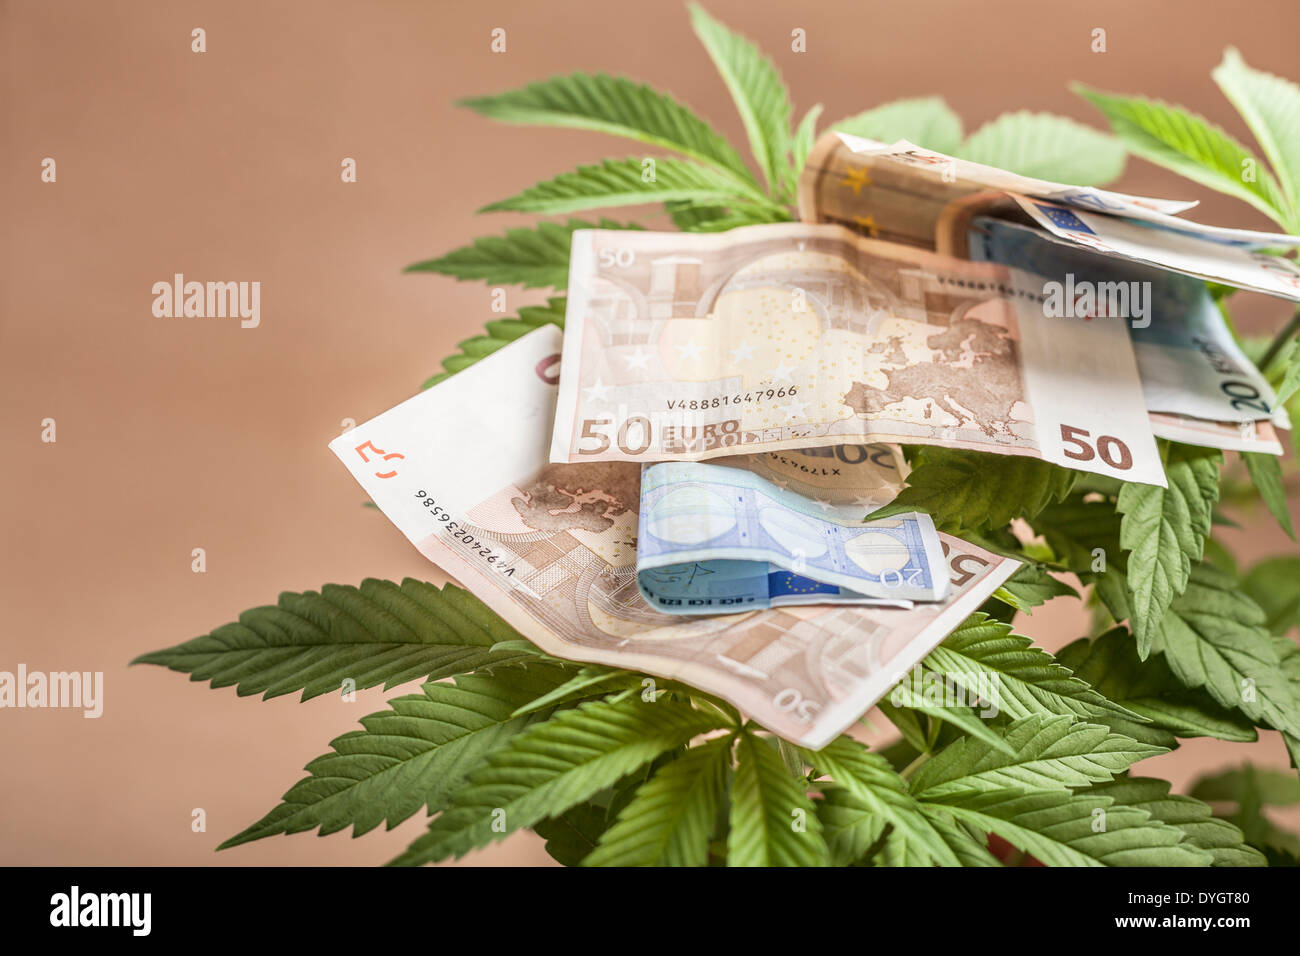 La Cannabis la concezione di business. Dettaglio della pianta di cannabis con banconote in euro. Foto Stock